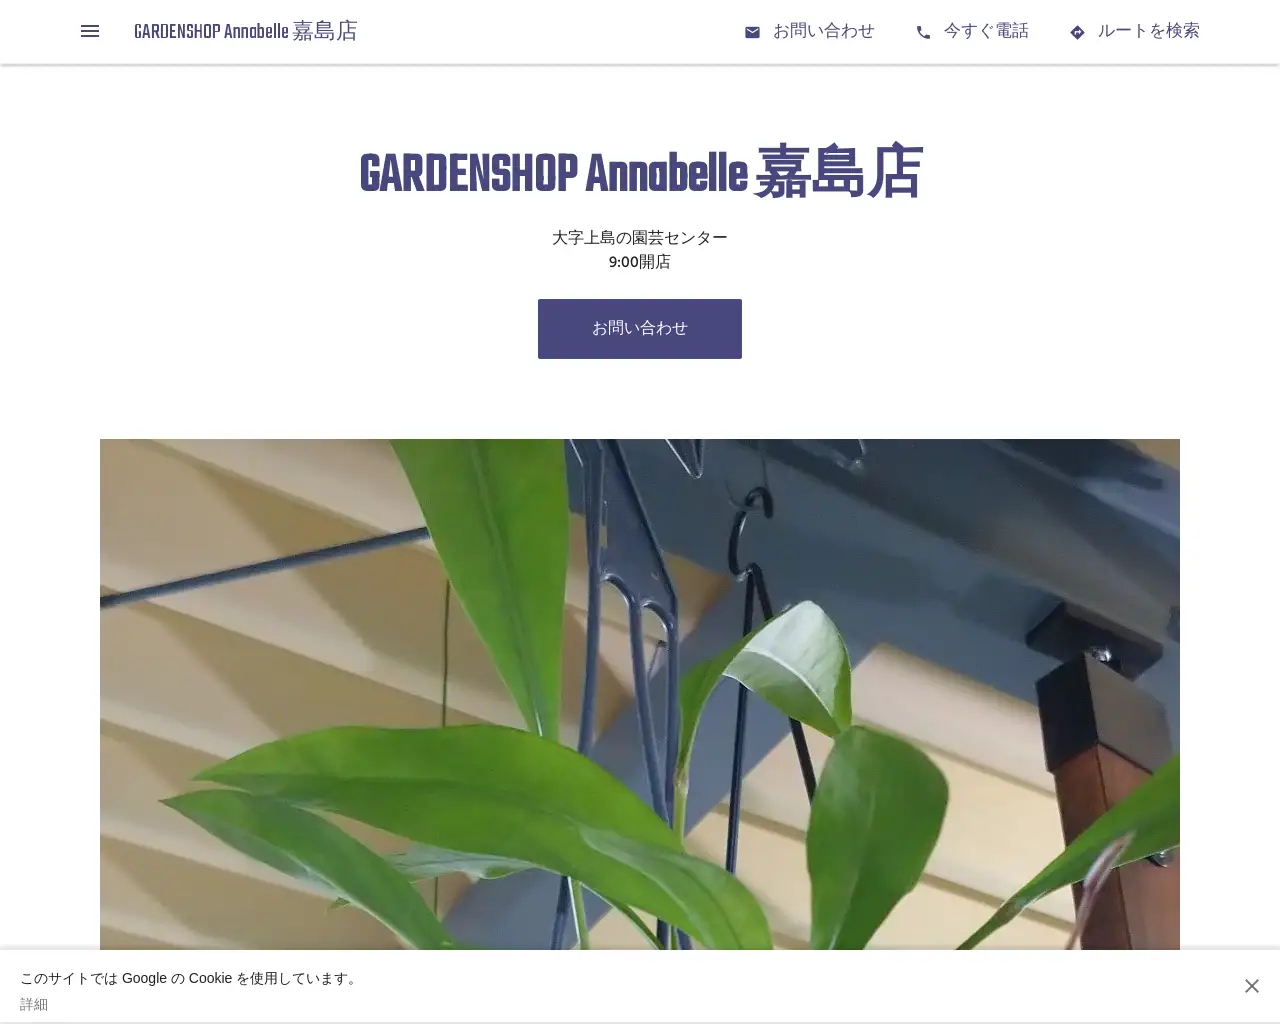 GARDENSHOP Annabelle 嘉島店 site